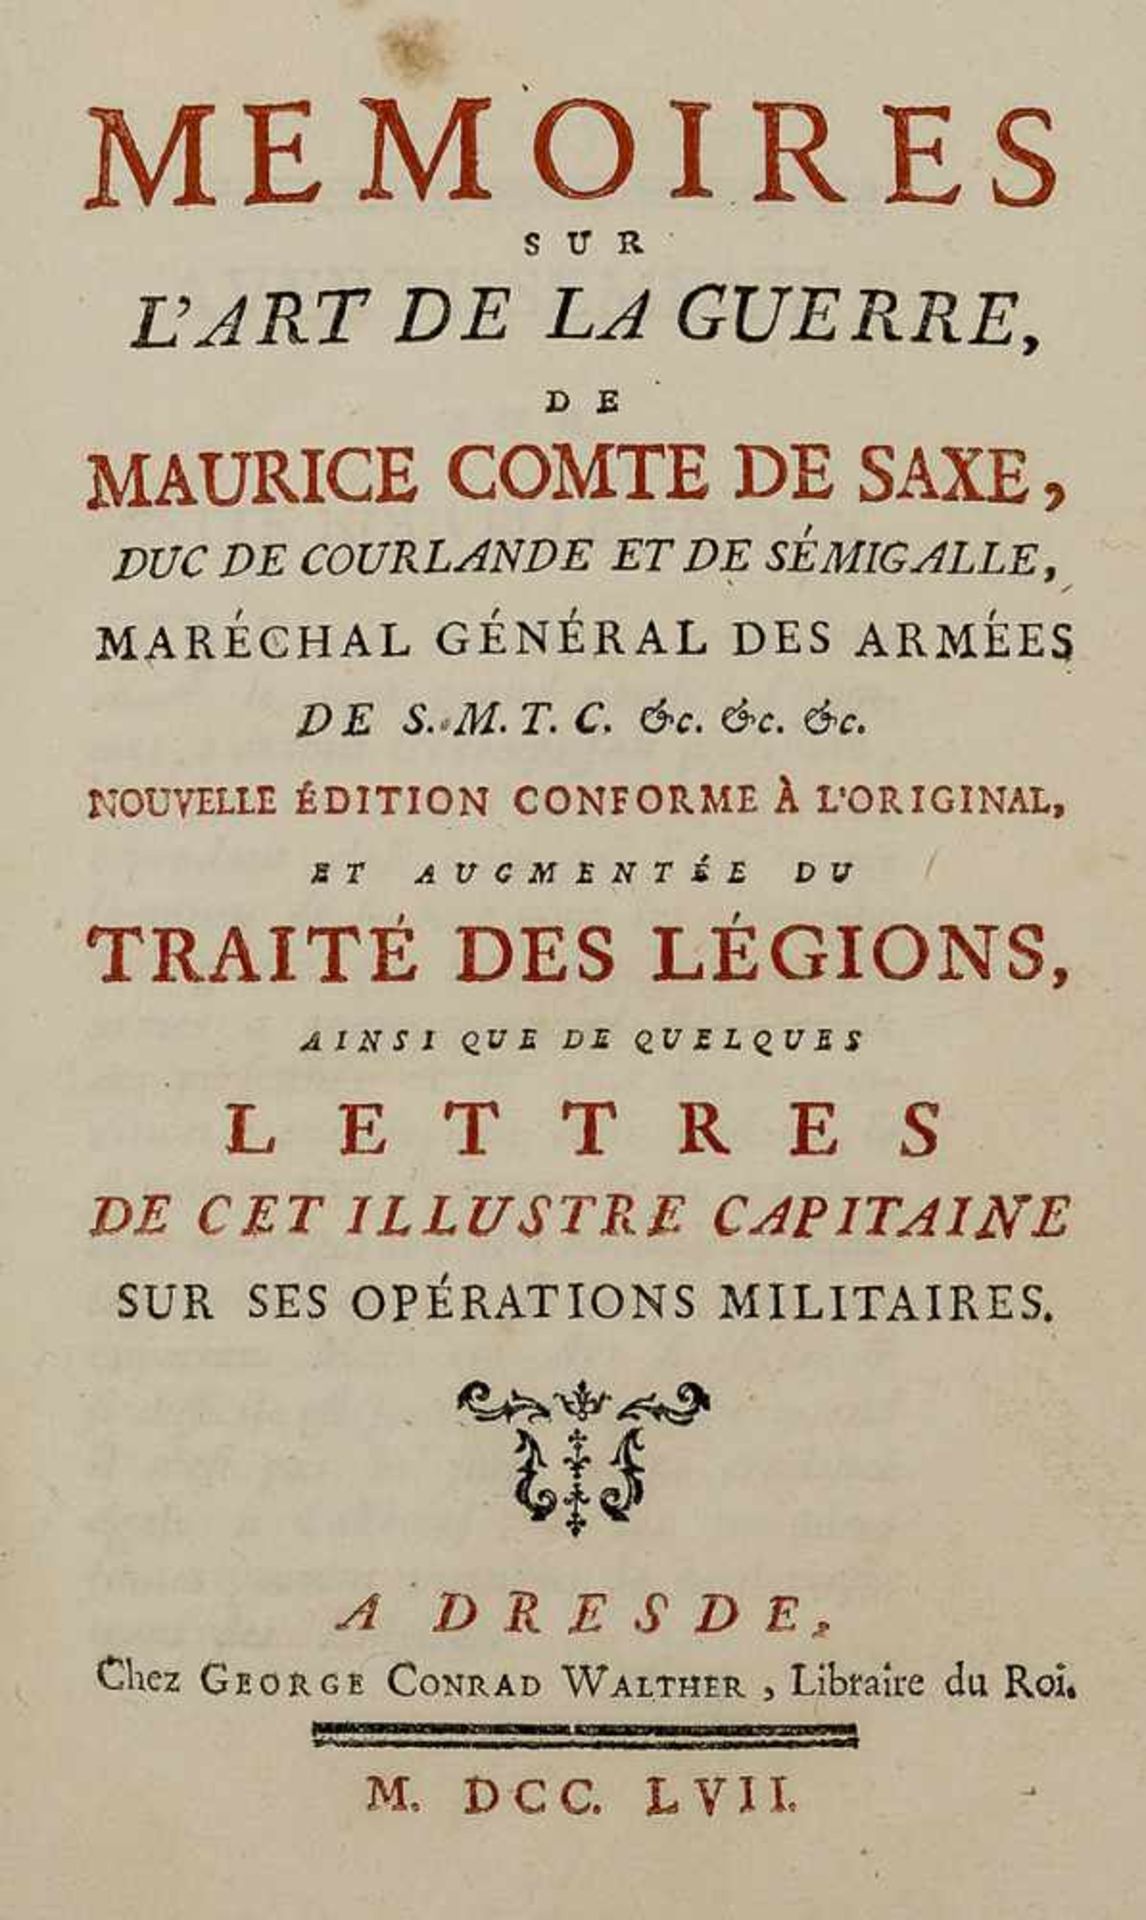 Militaria. – Maurice Comte de Saxe. Mémoires sur l’art de la guerre … Nouv. ed. Dresden, Walther,